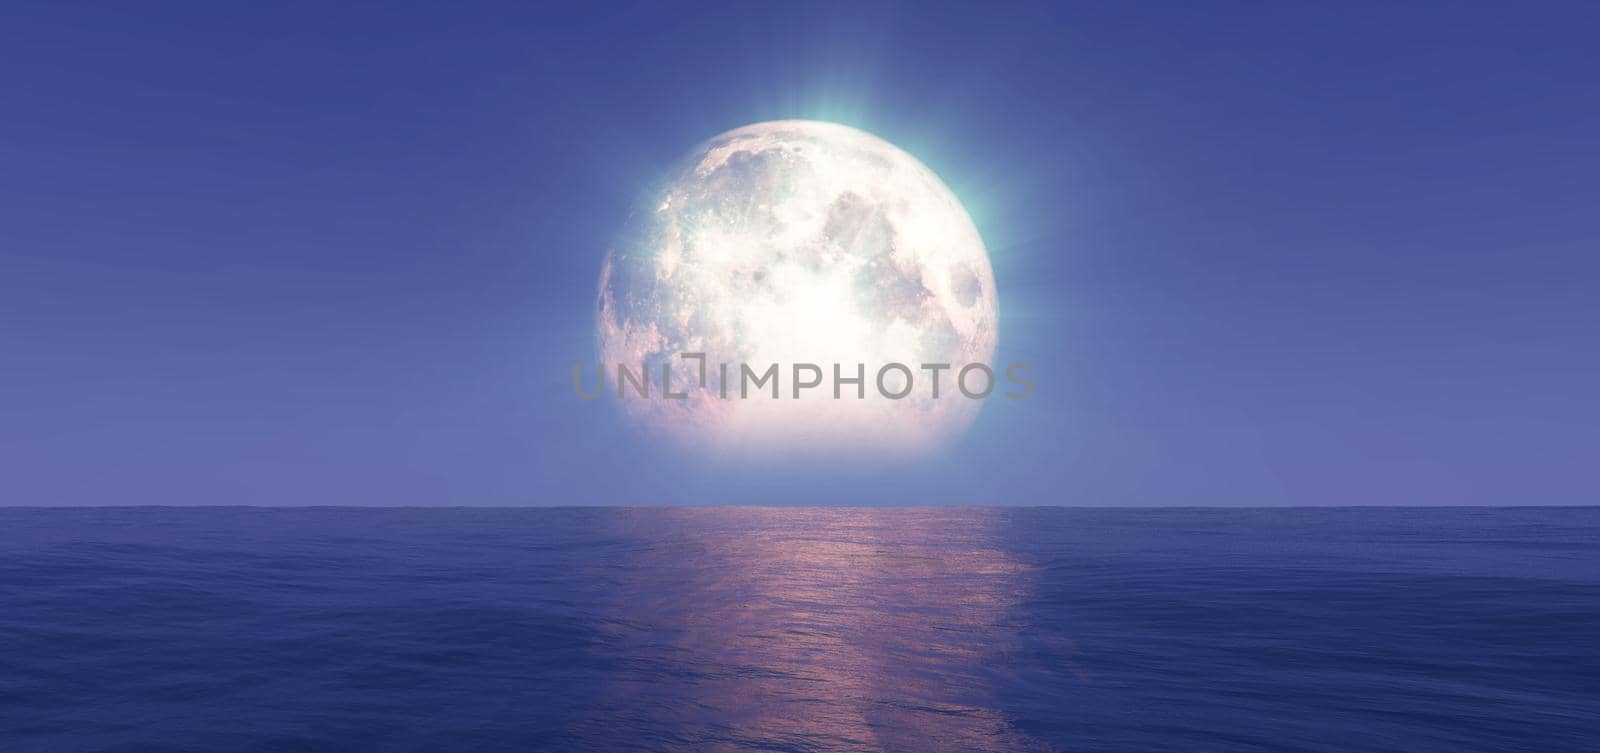 full moon at night abstract, 3d render illustration